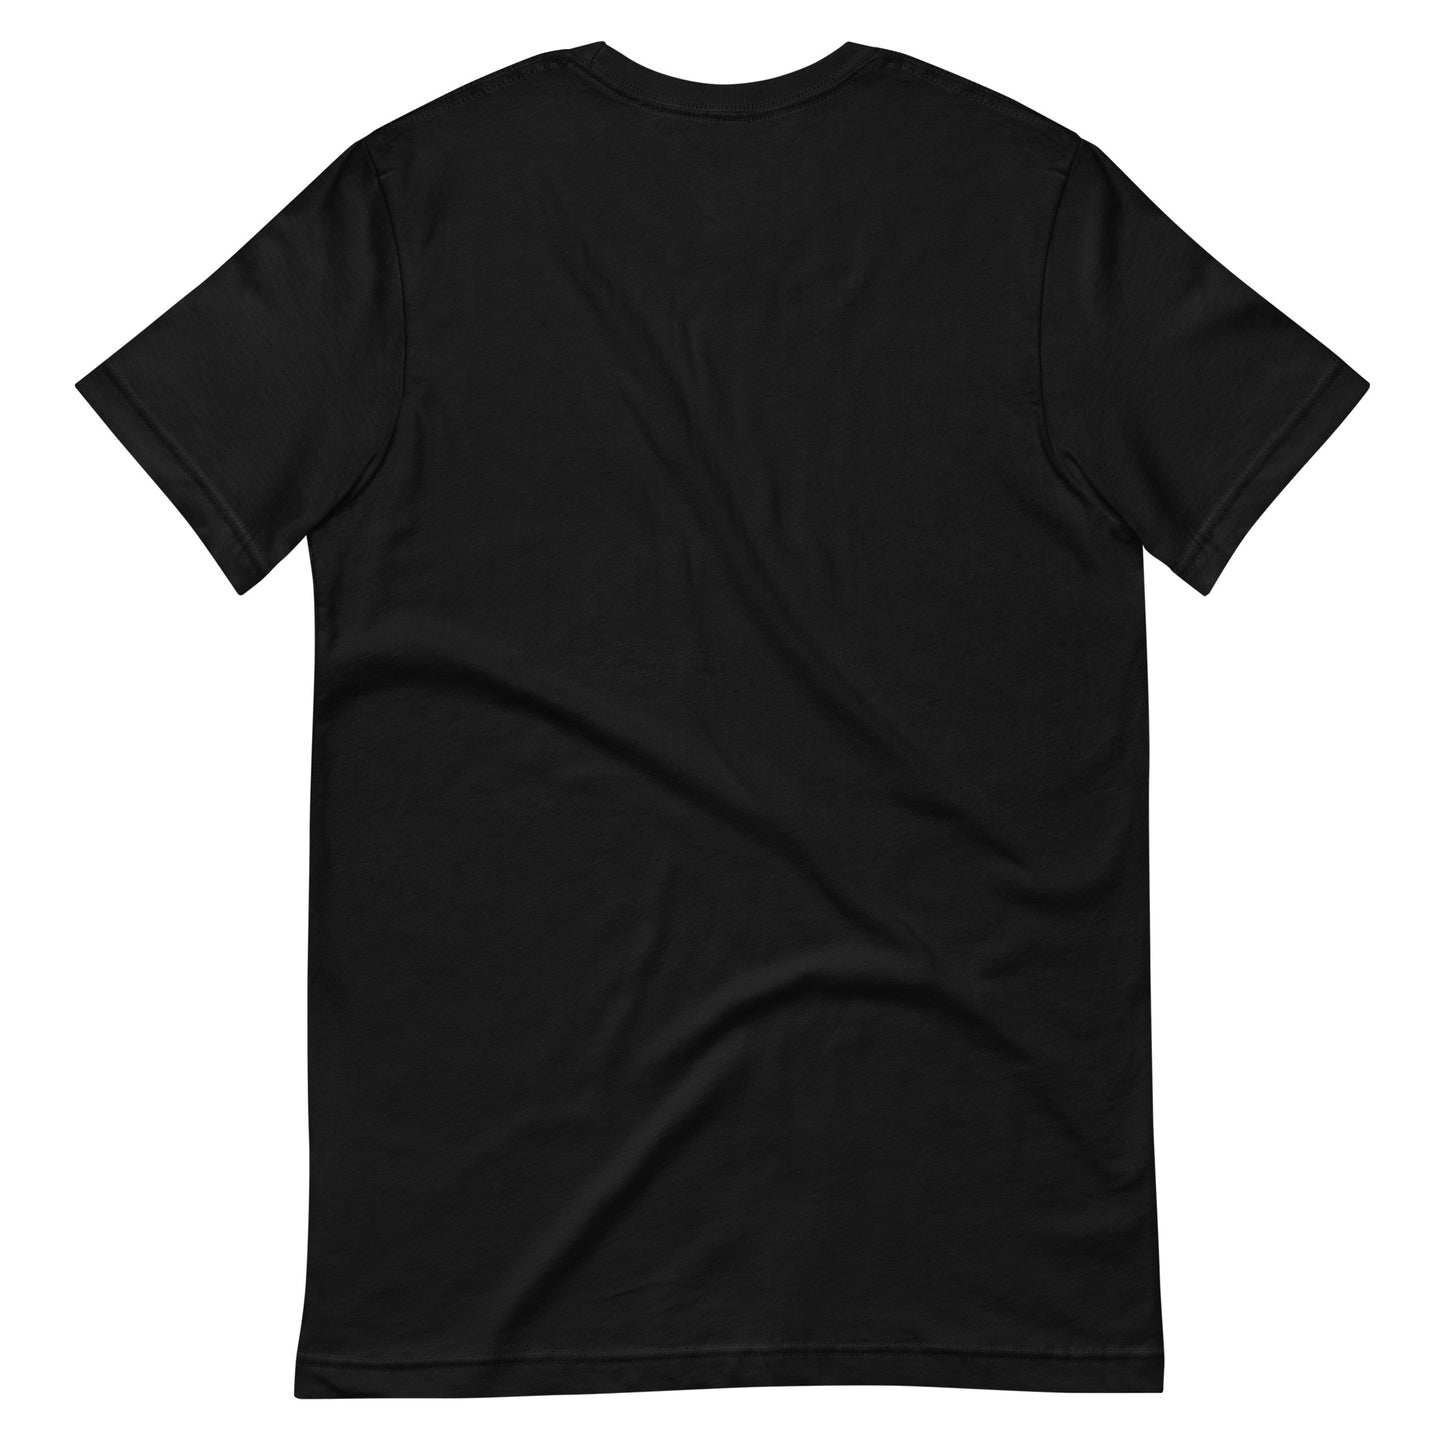 Paris Unisex T-Shirt